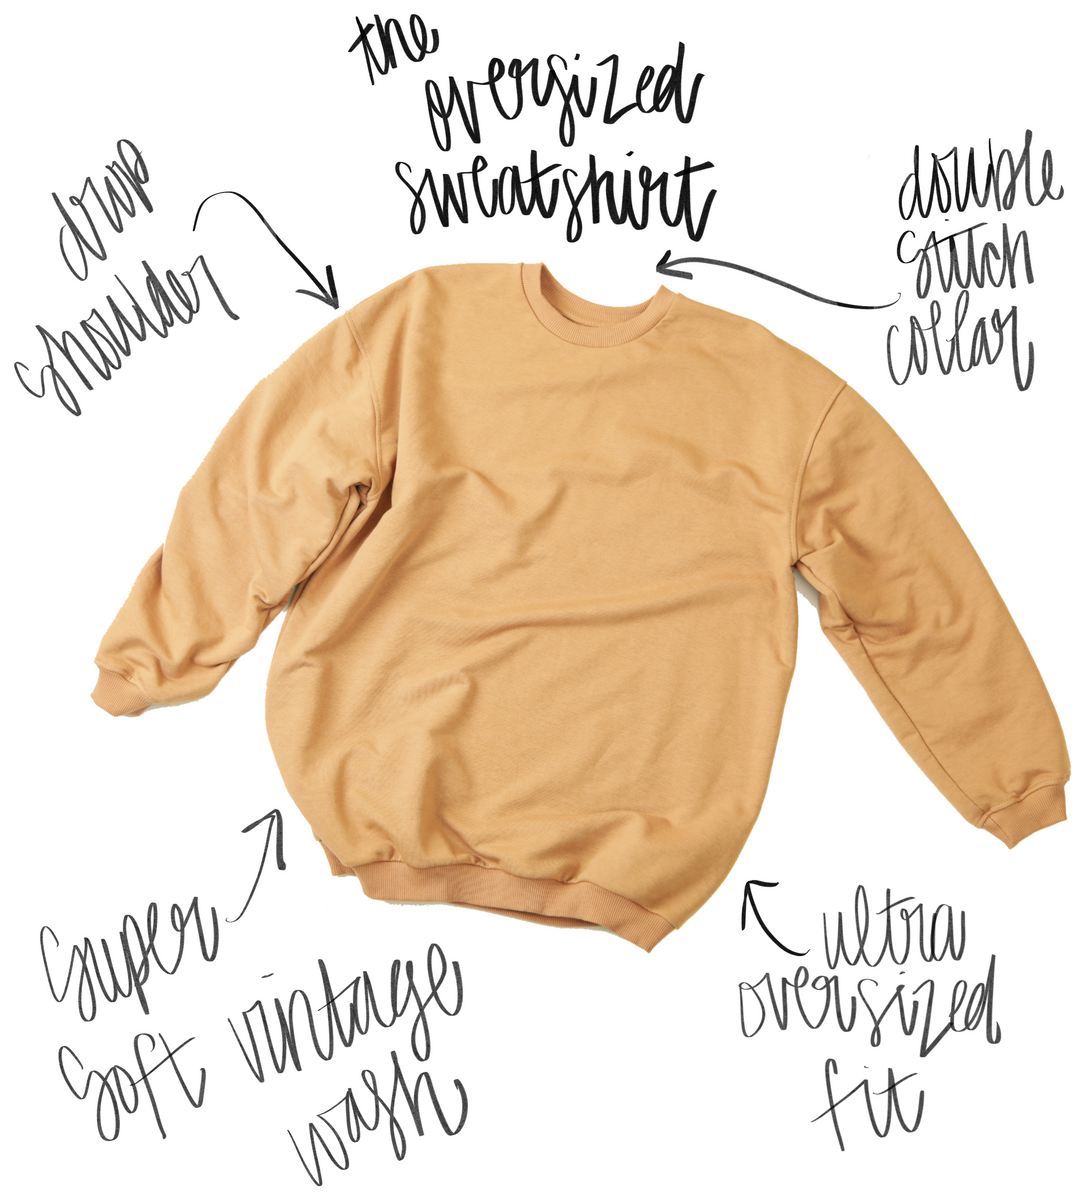 Underground Original Design: I Cry A Lot But I'm Productive Oversized 90's Sweatshirt